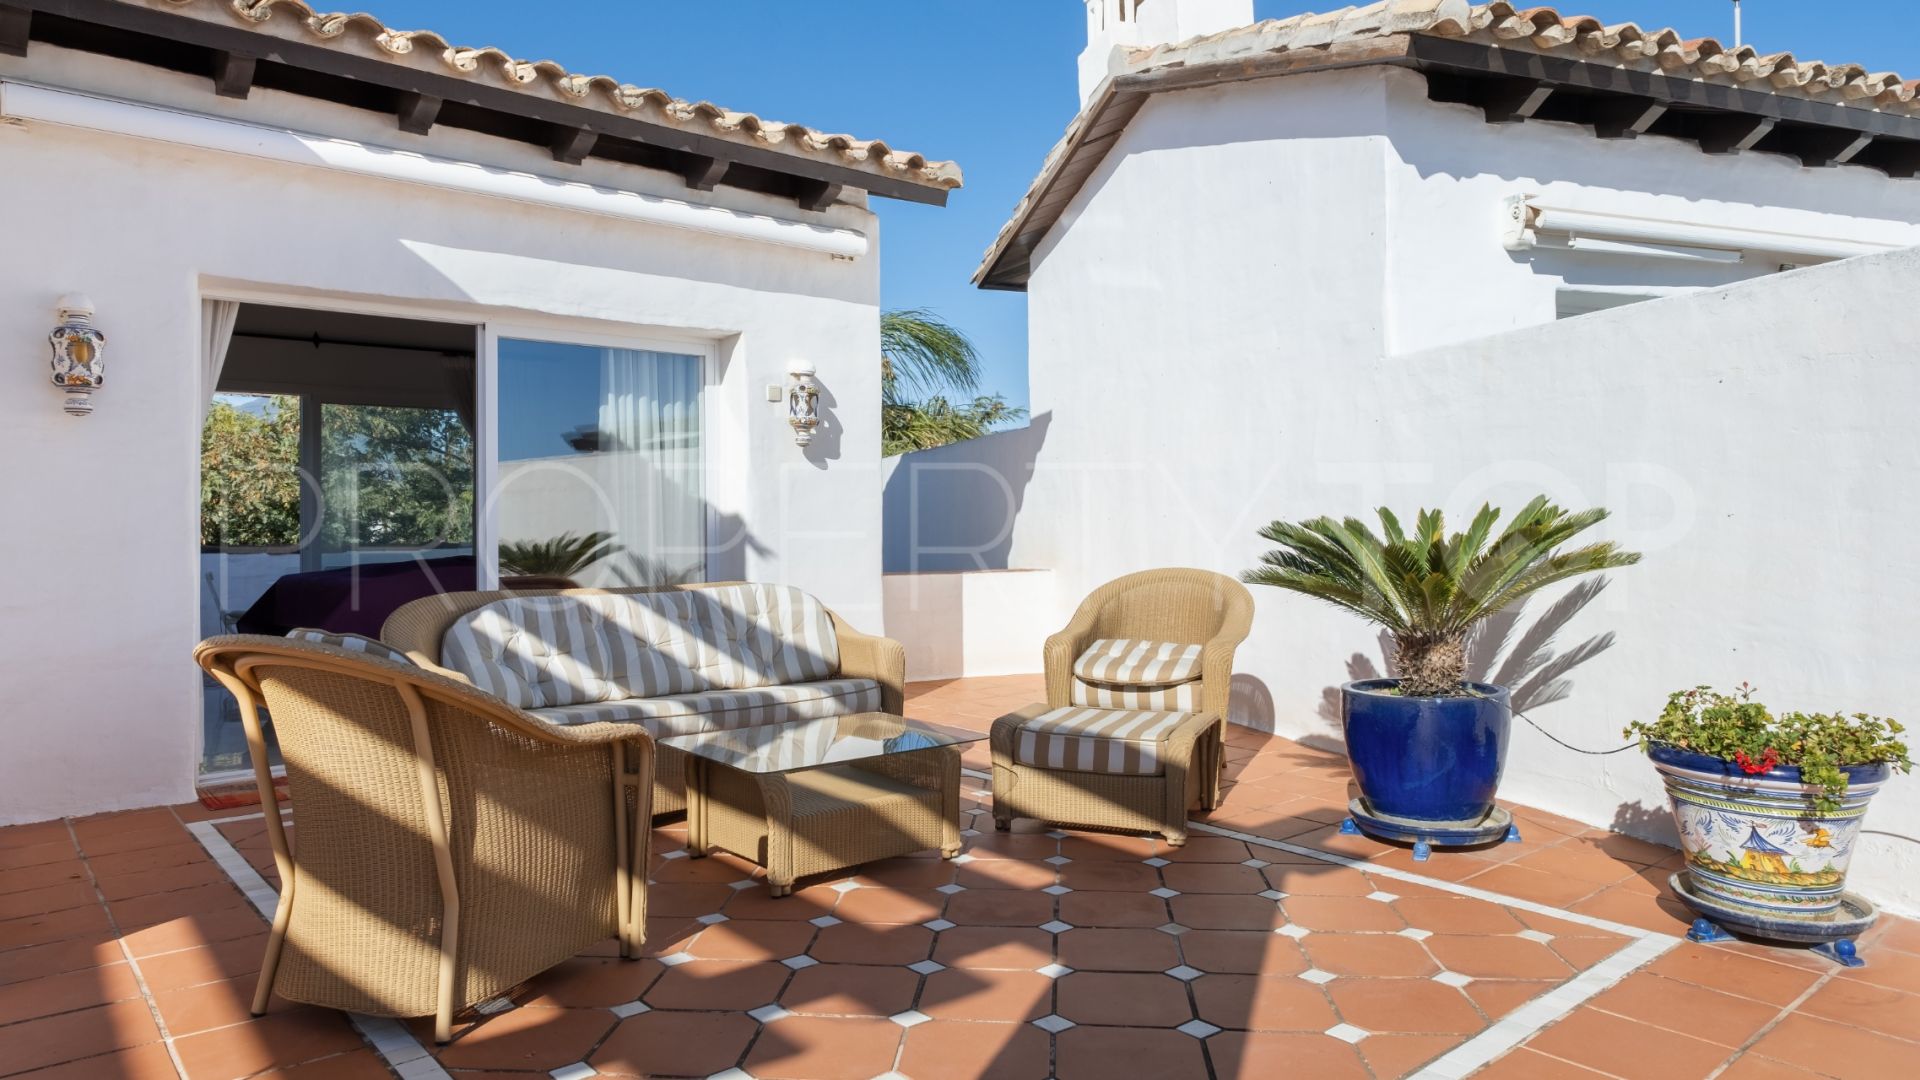 3 bedrooms duplex penthouse in Jardines de Ventura del Mar for sale